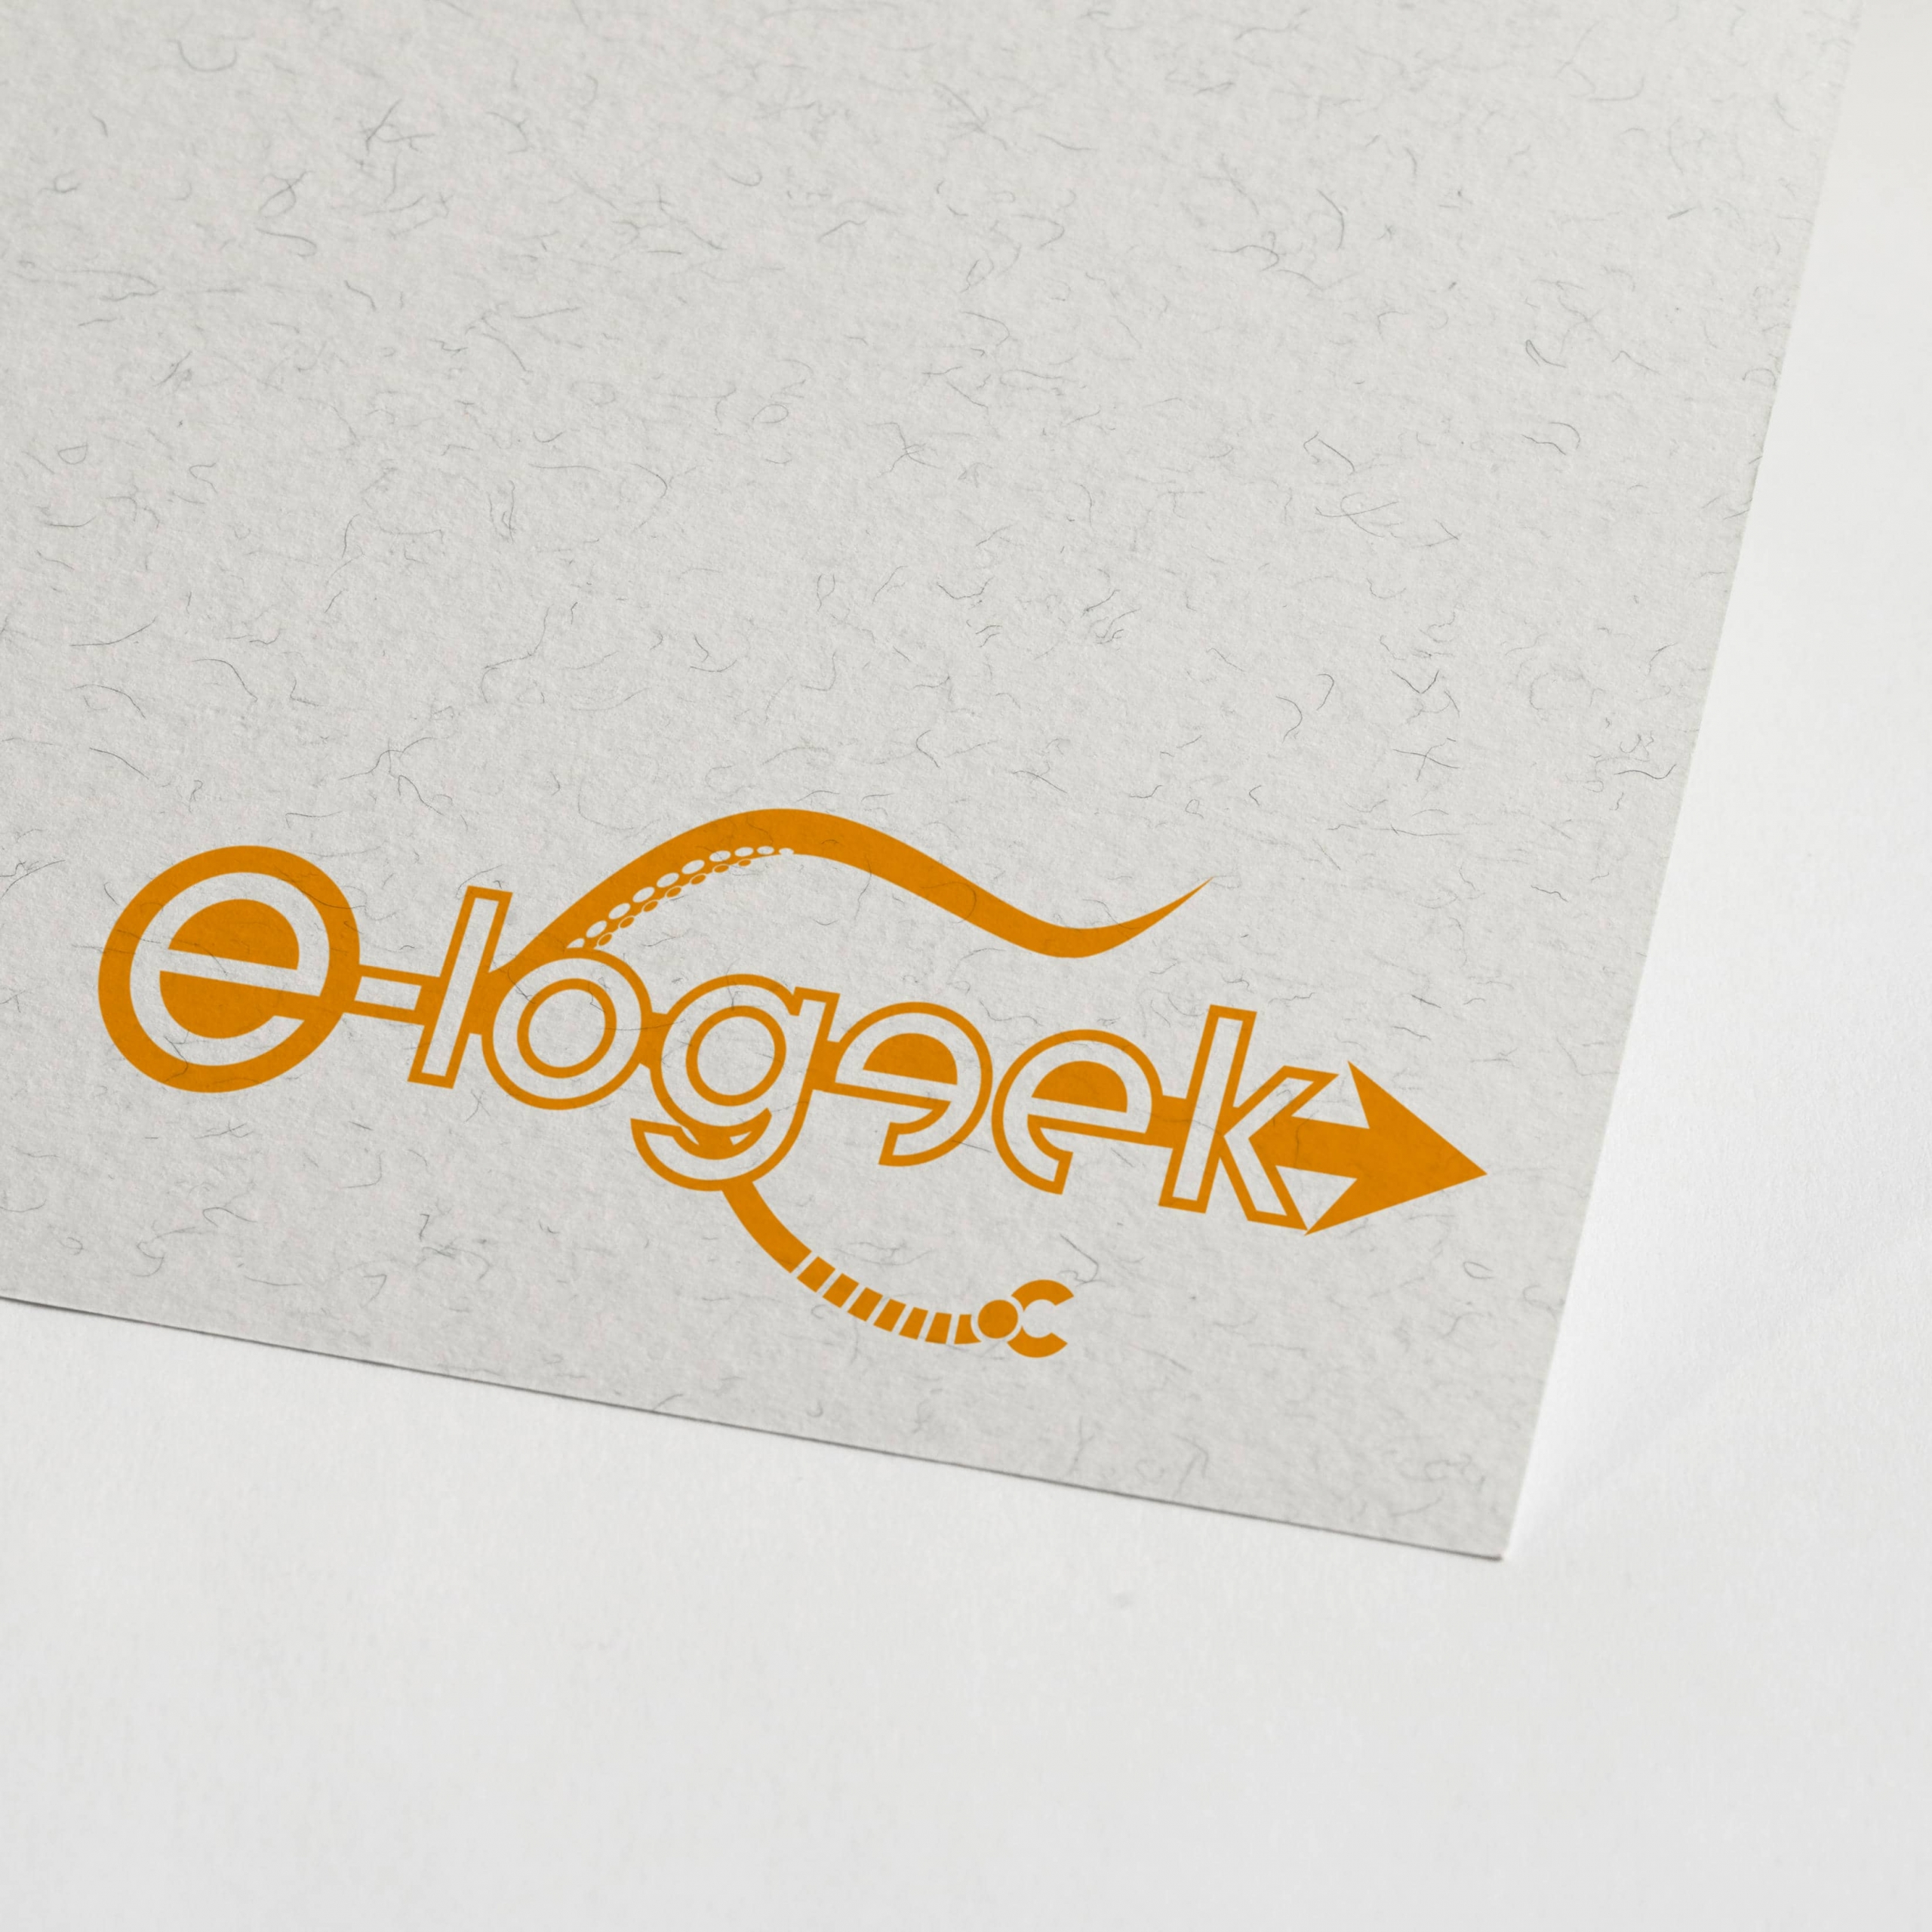 Logo E-logeek